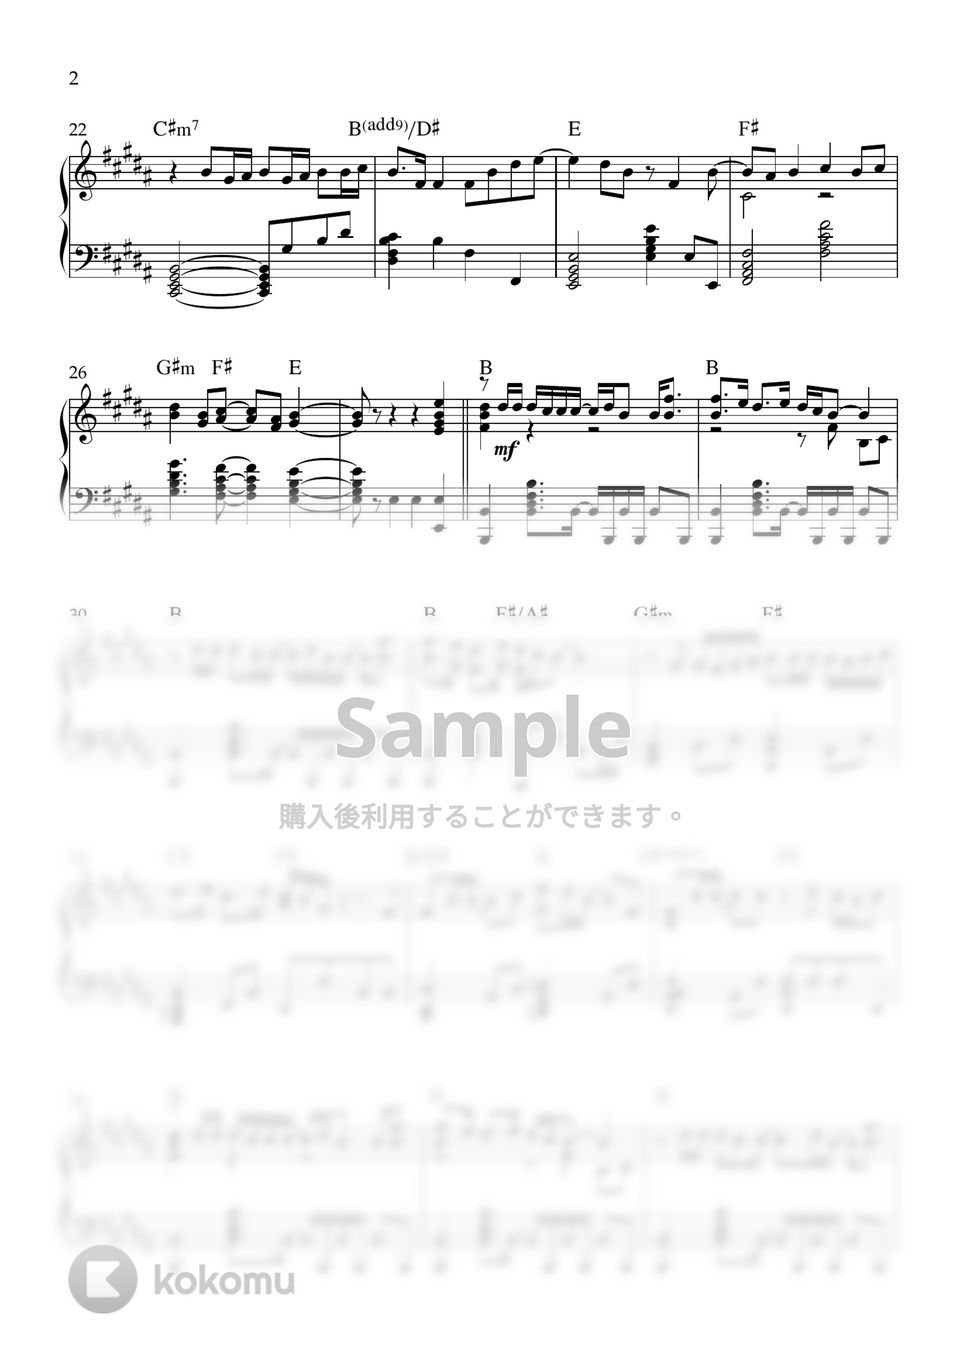 BUMP OF CHICKEN - 窓の中から (ピアノソロ) by kanapiano